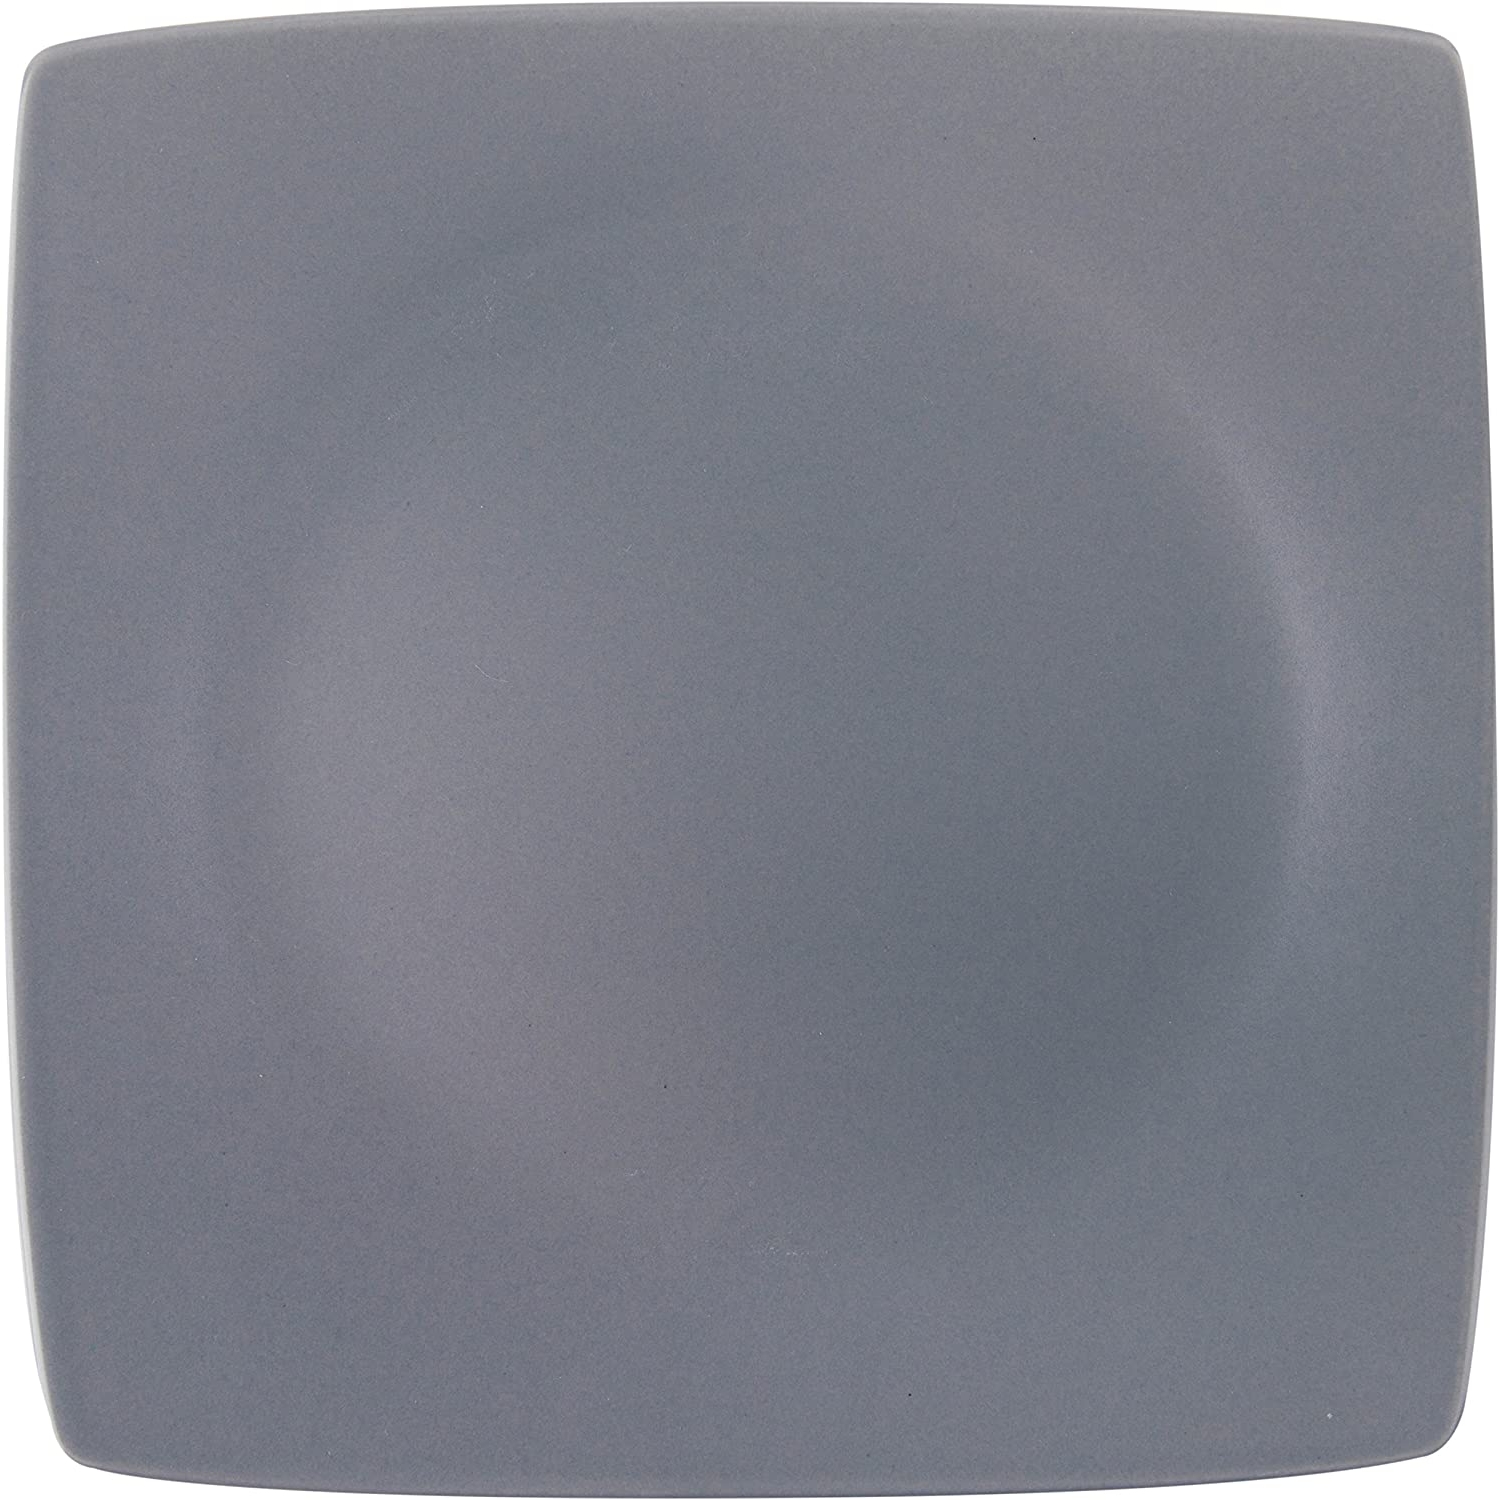 Excelsa Eclipse piatto FRutta ceramica grigio cod.61568